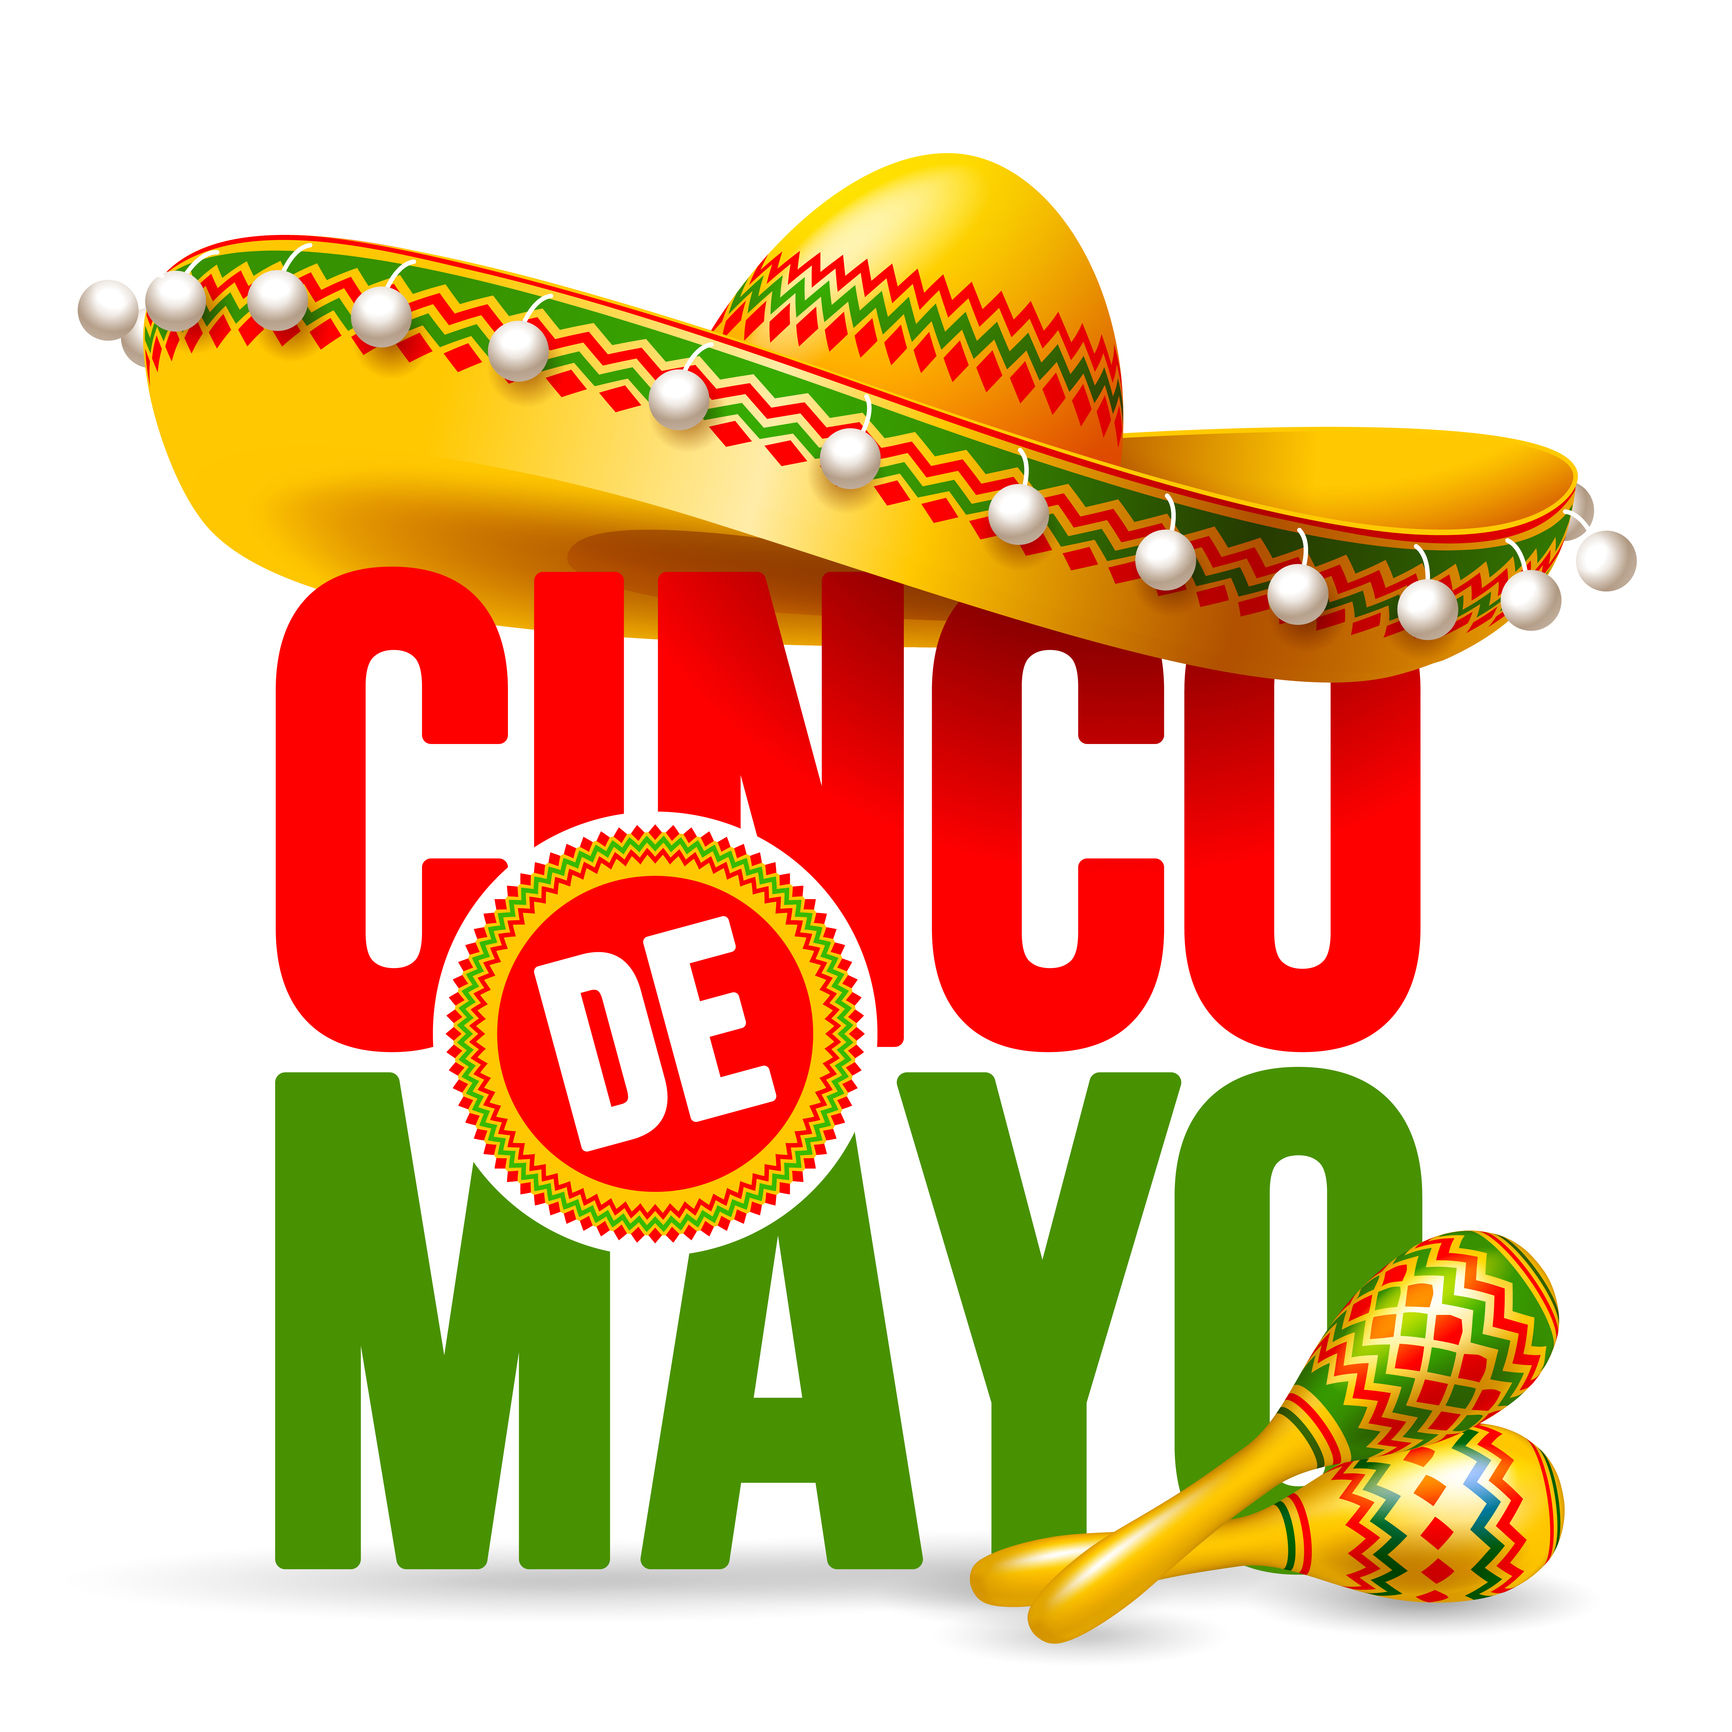 Celebrate Cinco de mayo Saturday, May 5, 2018